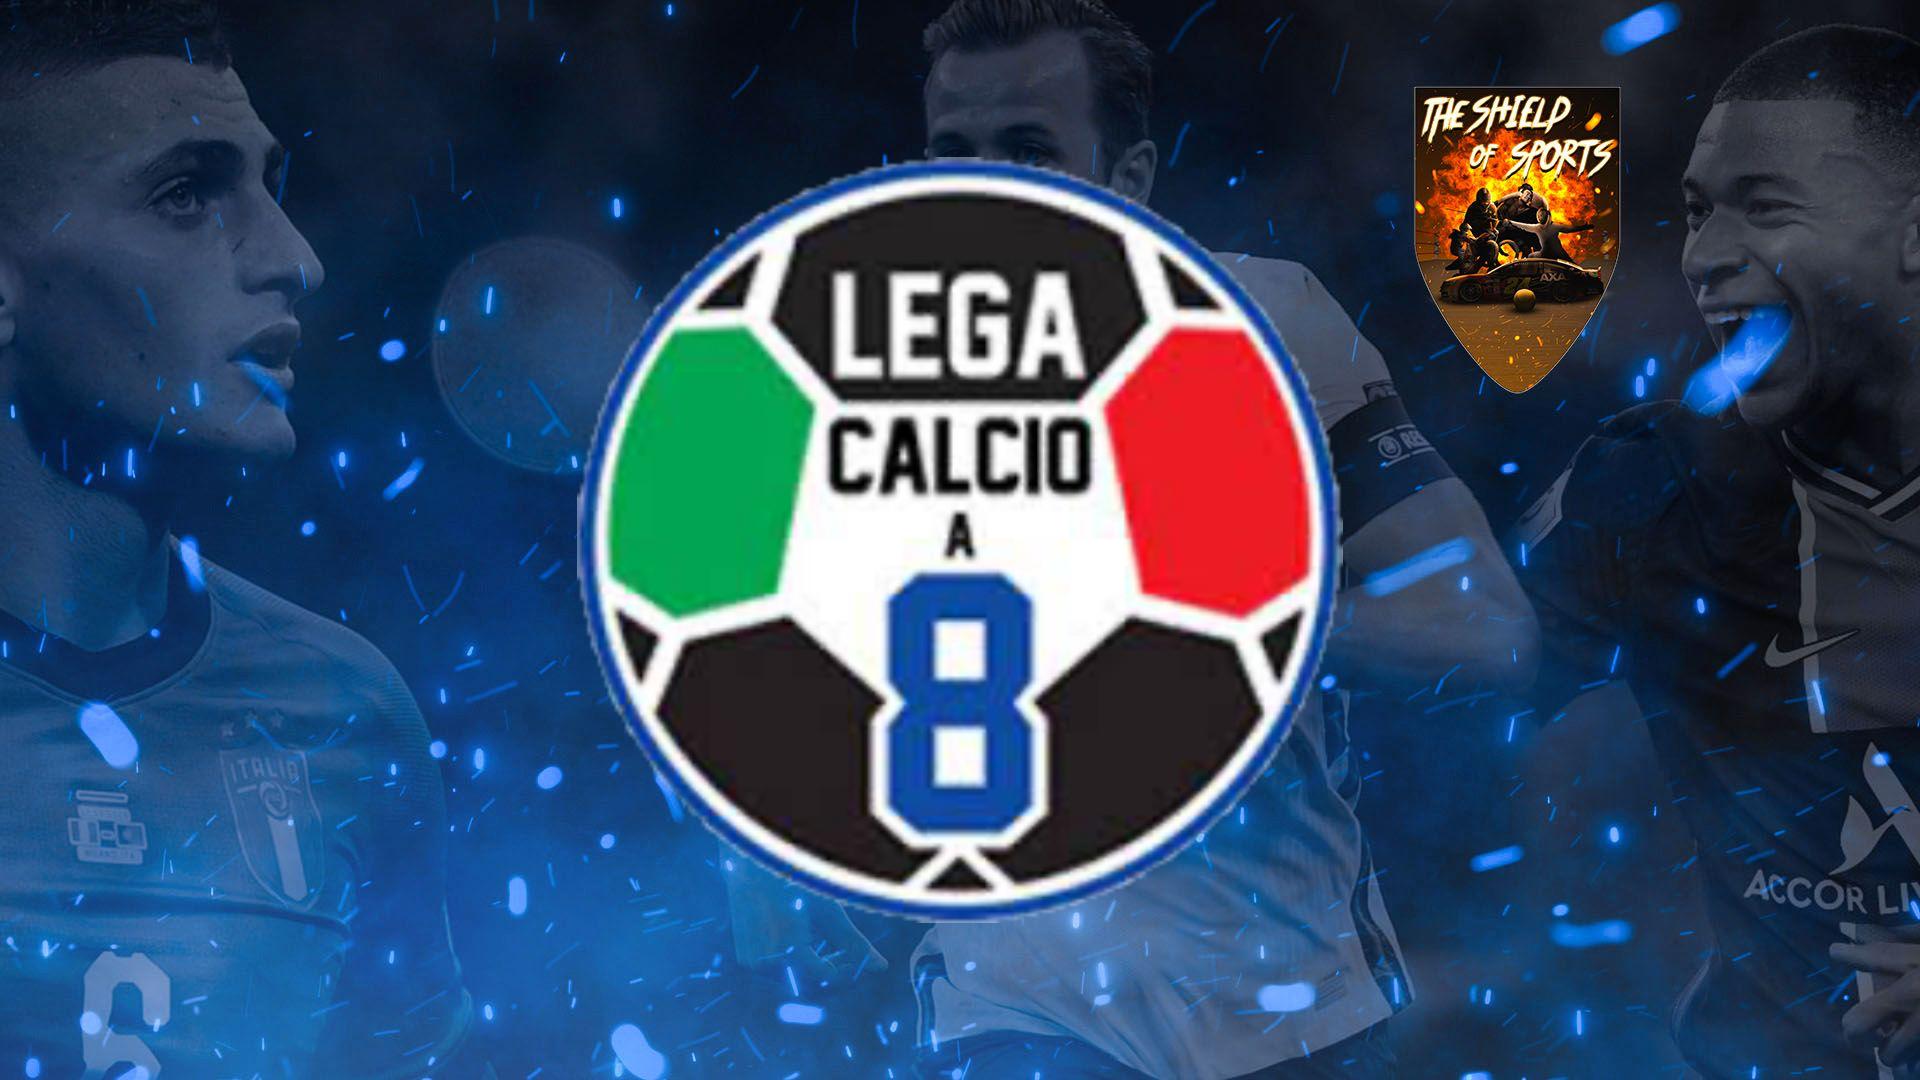 Lega Calcio a 8:sold out la Notte delle finali del 25 Aprile